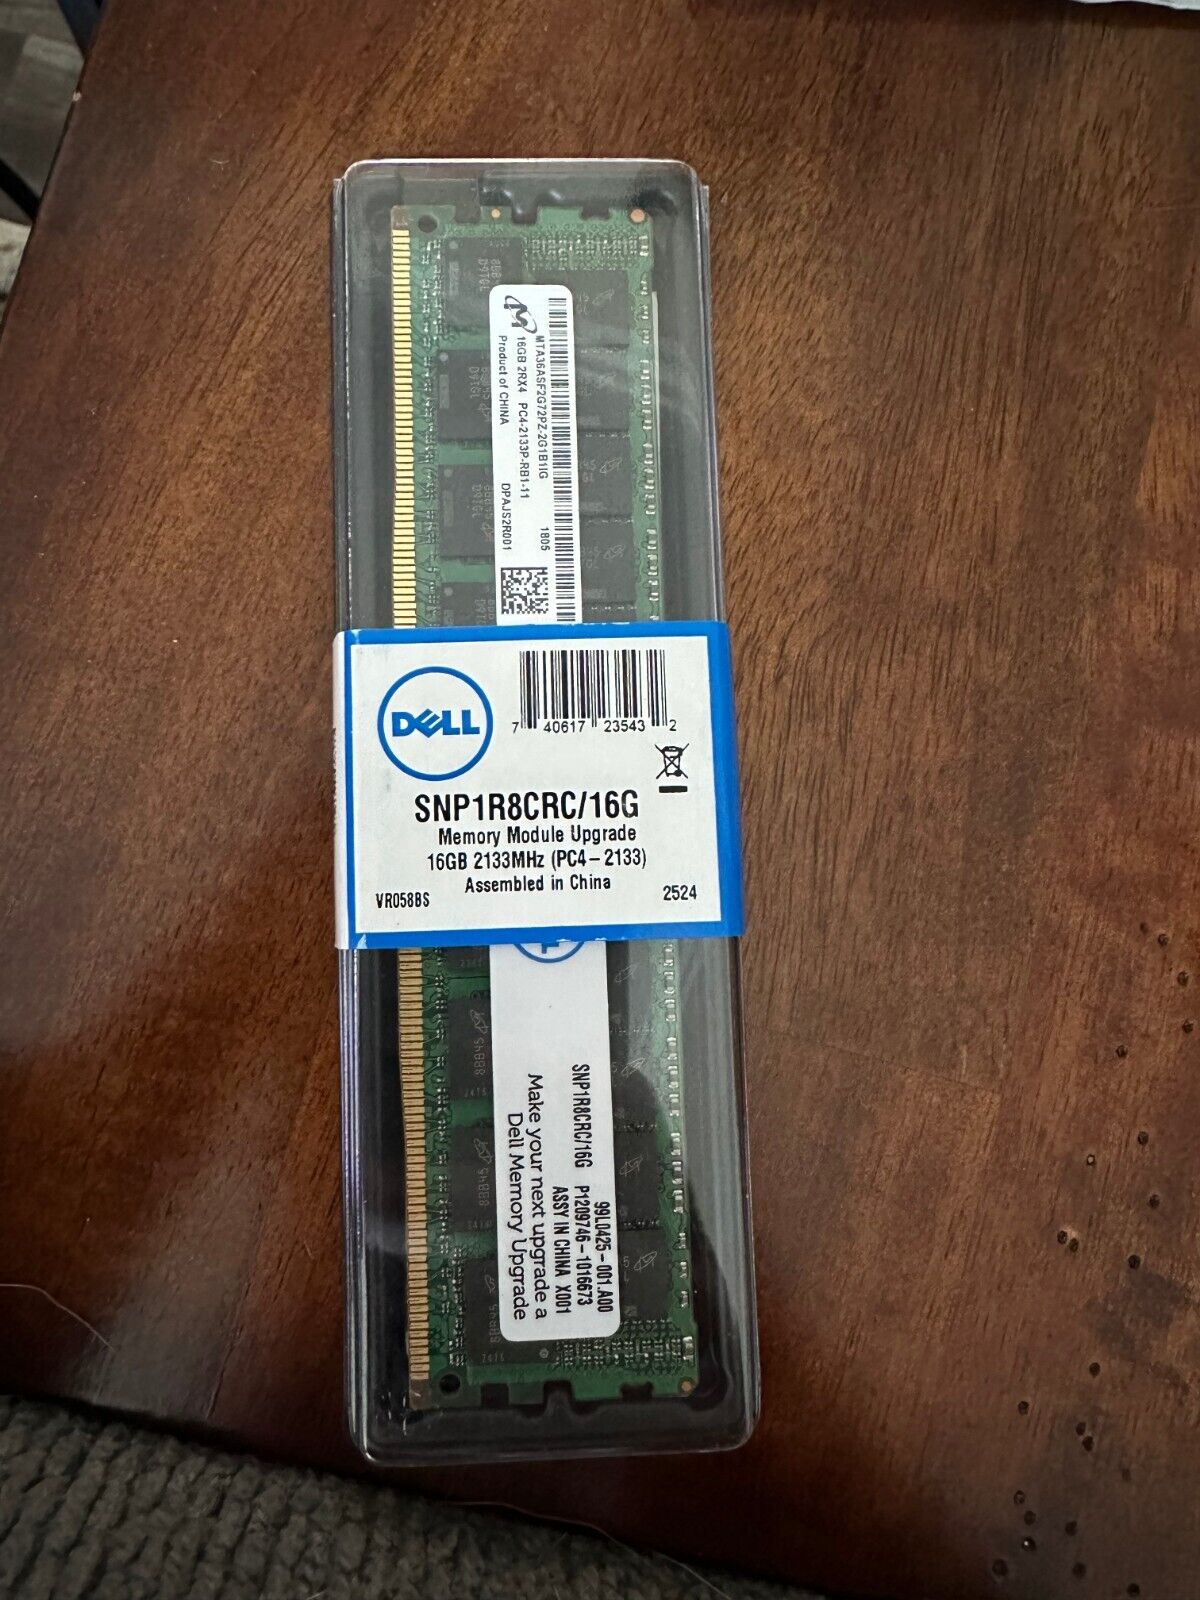 Dell SNP1R8CRC/16G Memory Module Upgrade 16GB 2133MHz (PC4 - 2133)